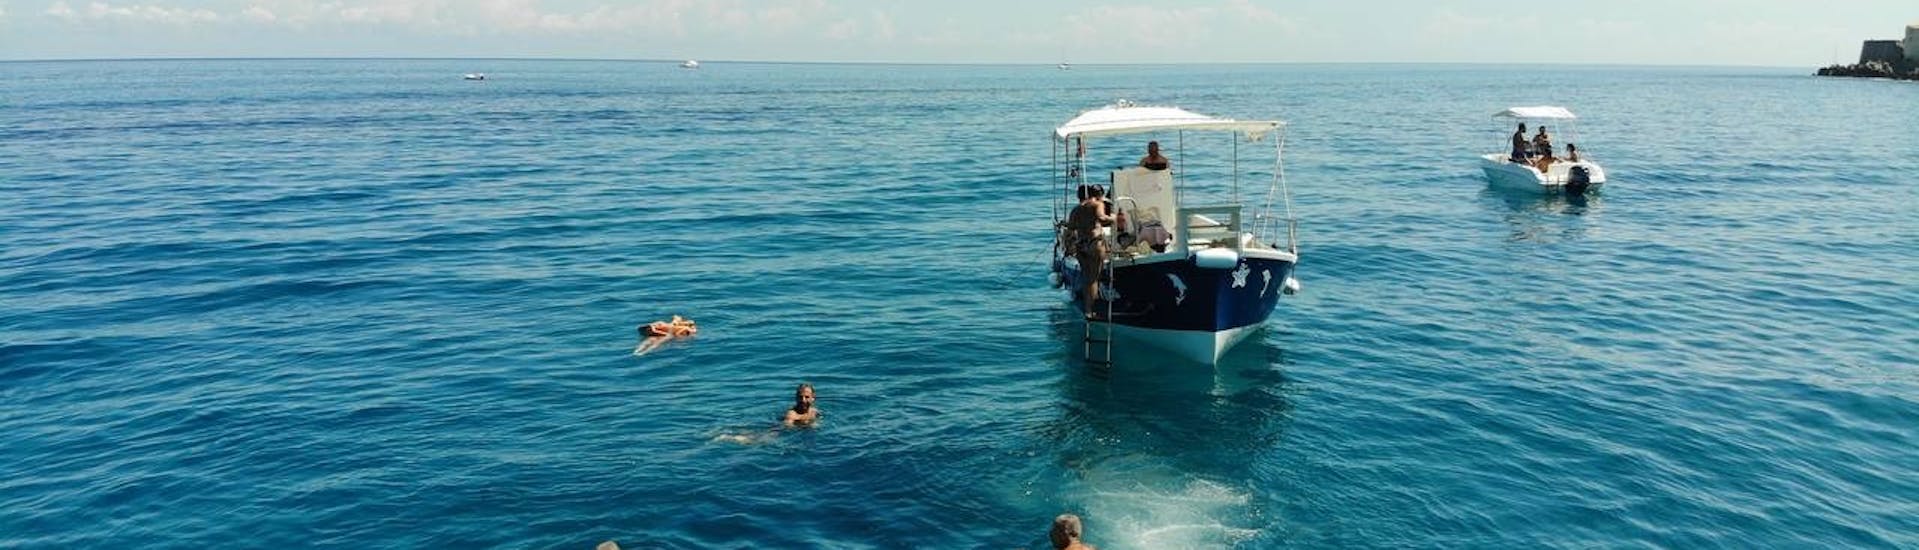 Photo de personnes nageant lors de l'arrêt snorkeling au cours de la Balade en bateau autour de Cefalù avec Snorkeling et Apéritif avec Escursioni in barca La Niña Cefalù.